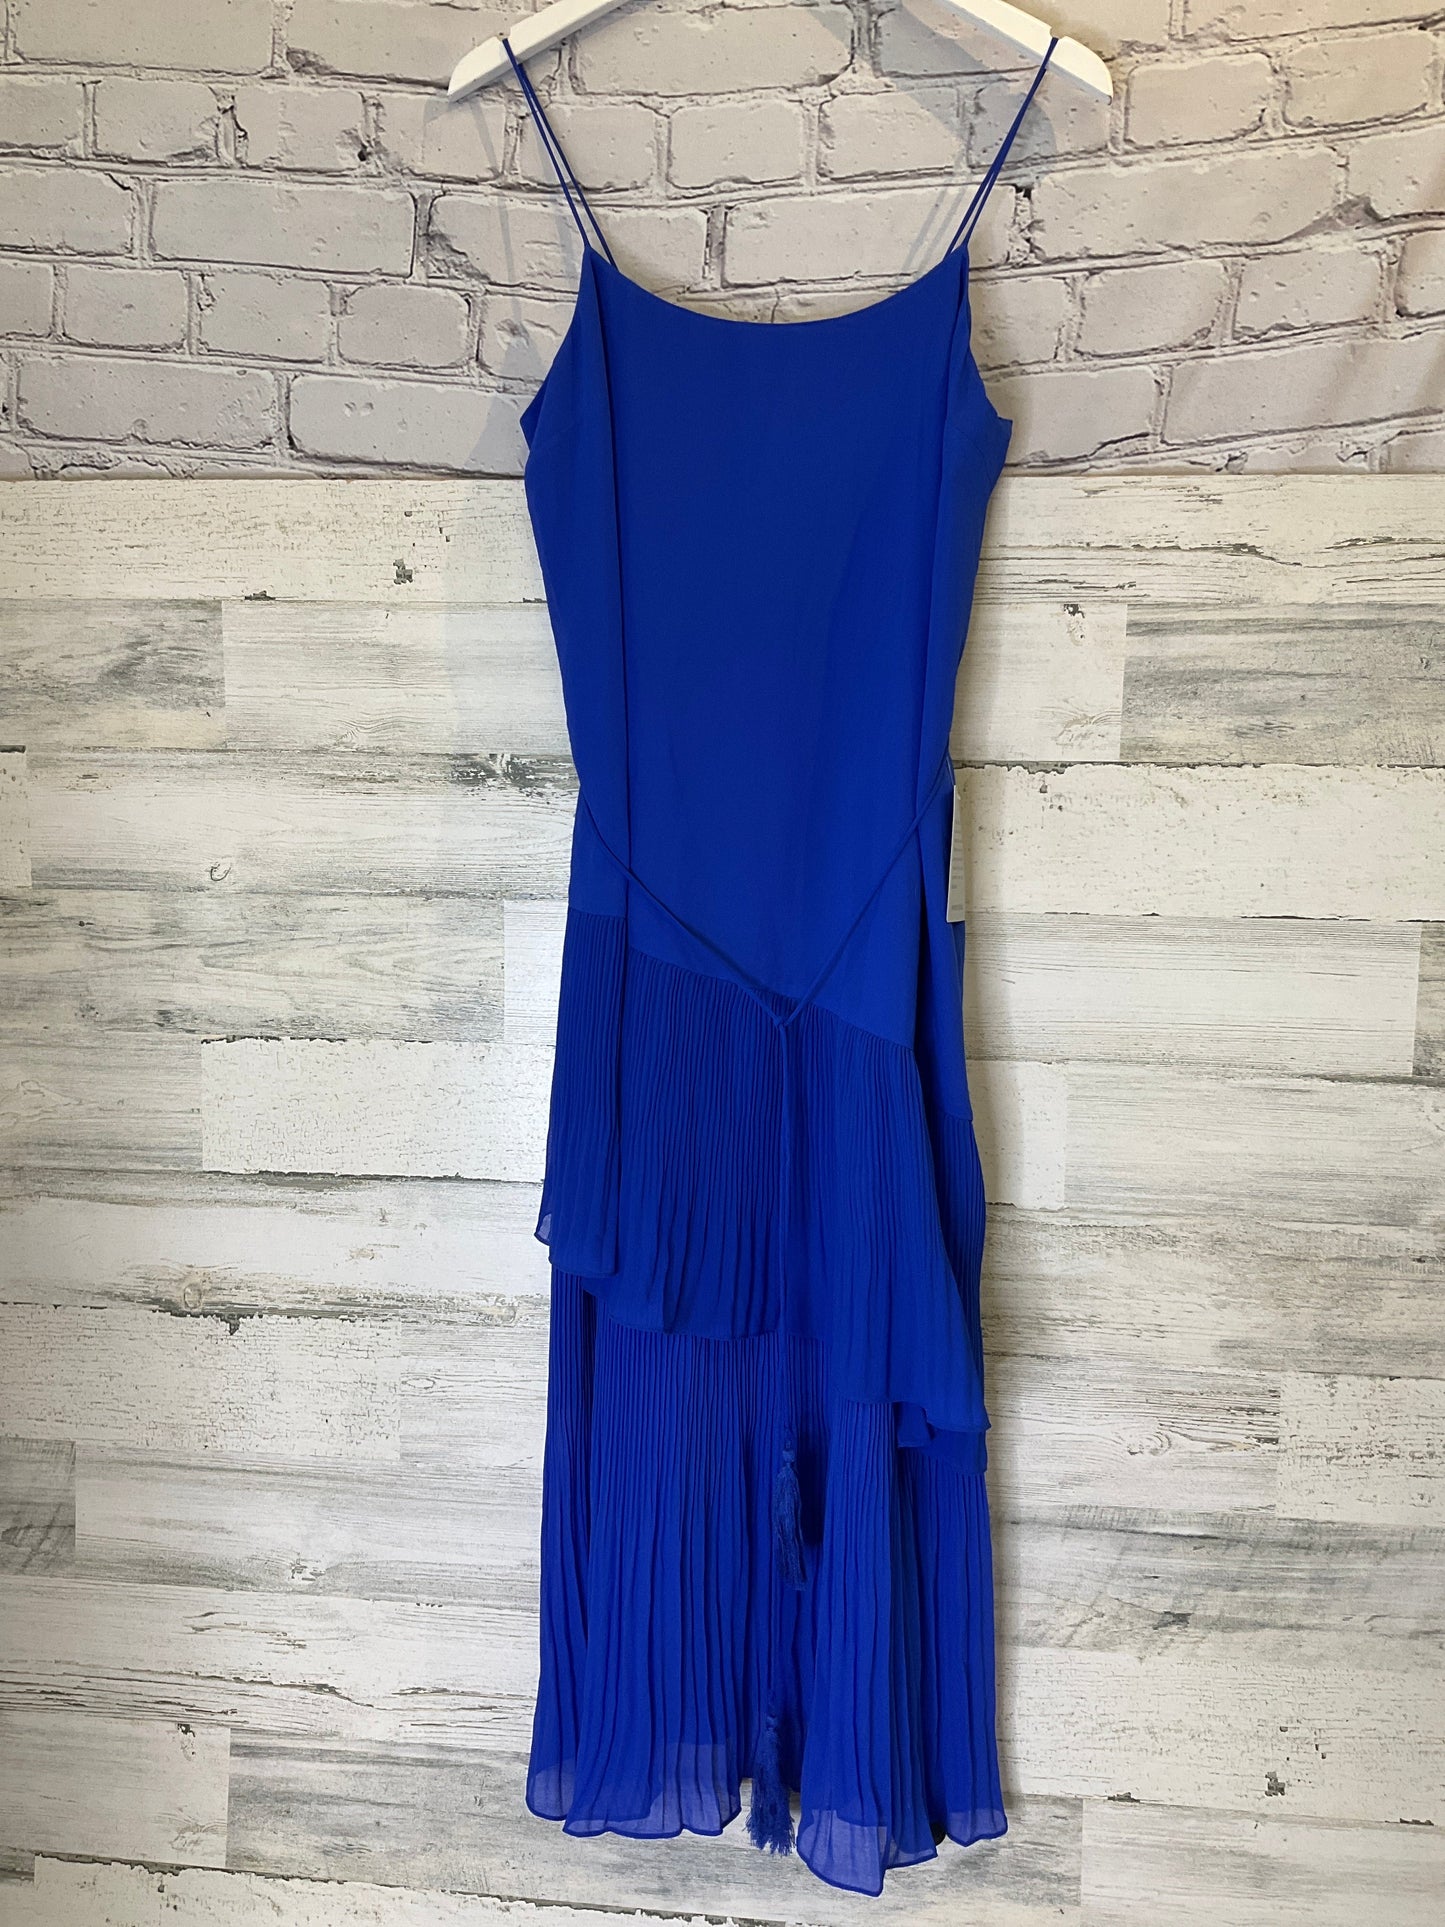 Blue Dress Party Midi Chelsea 28, Size M